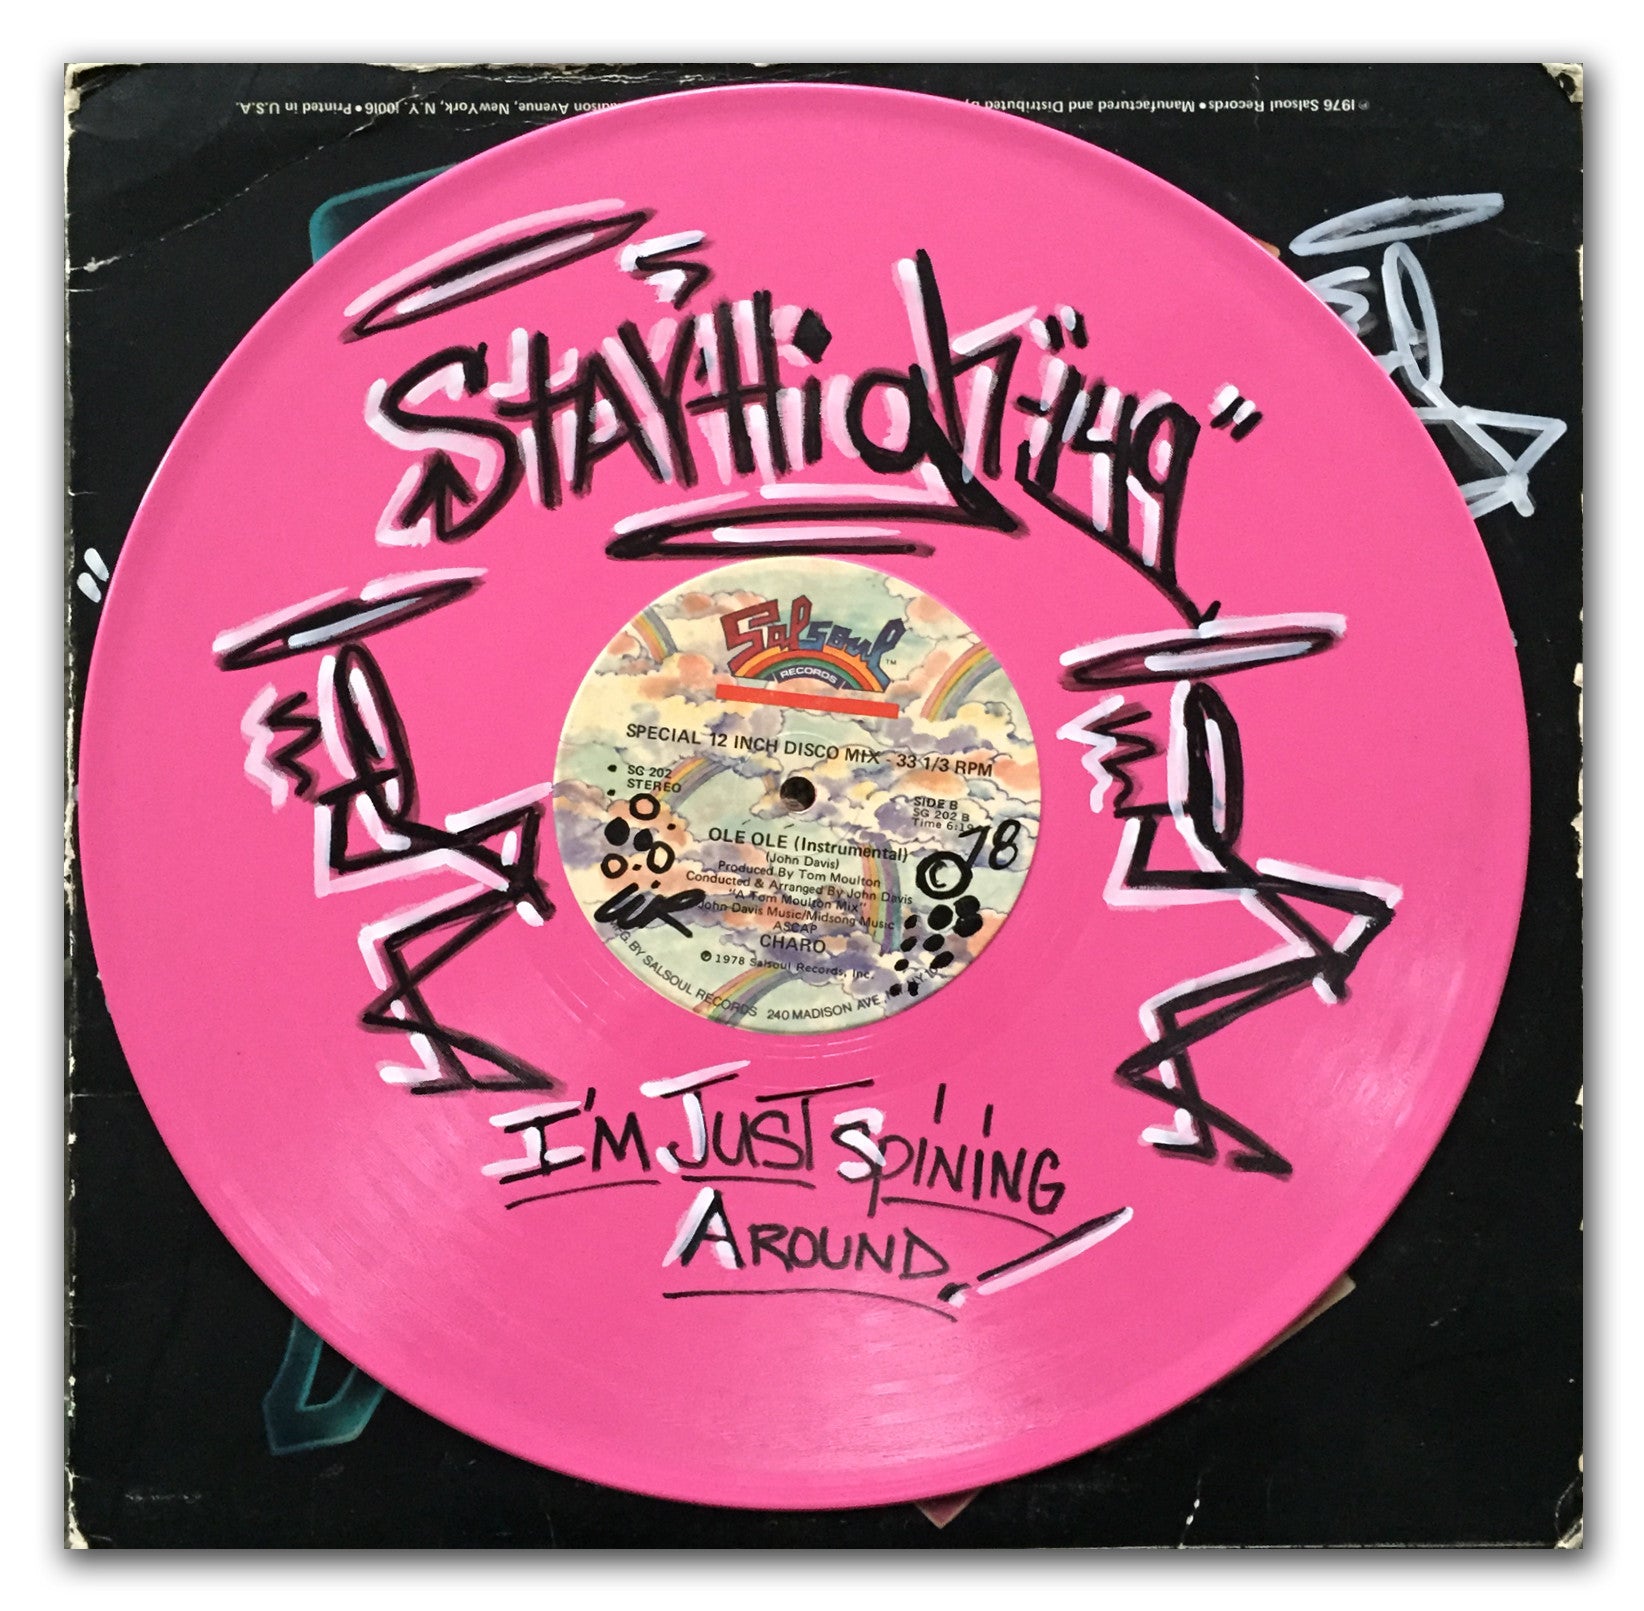 STAYHIGH 149 -"Im just spinning around" Album